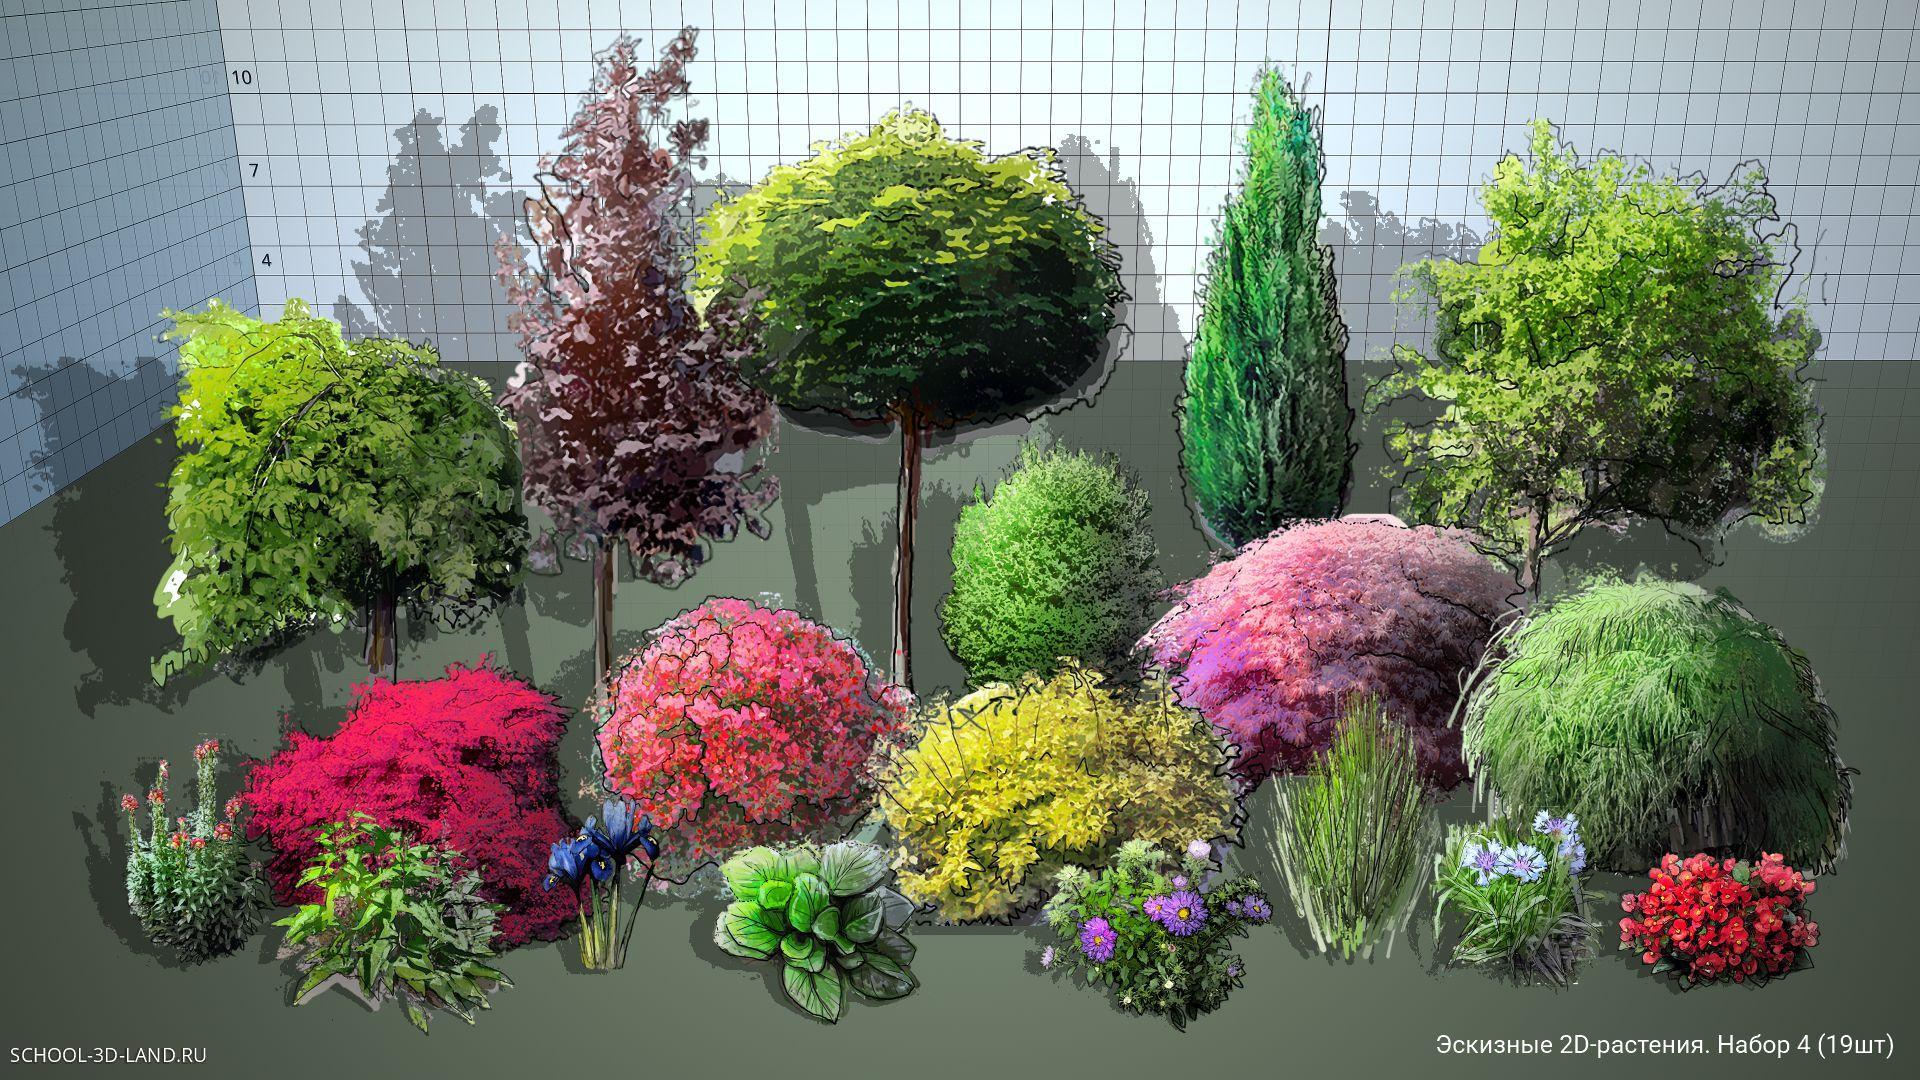 Эскизные 2D-растения для SketchUp. Набор 4 (19шт)